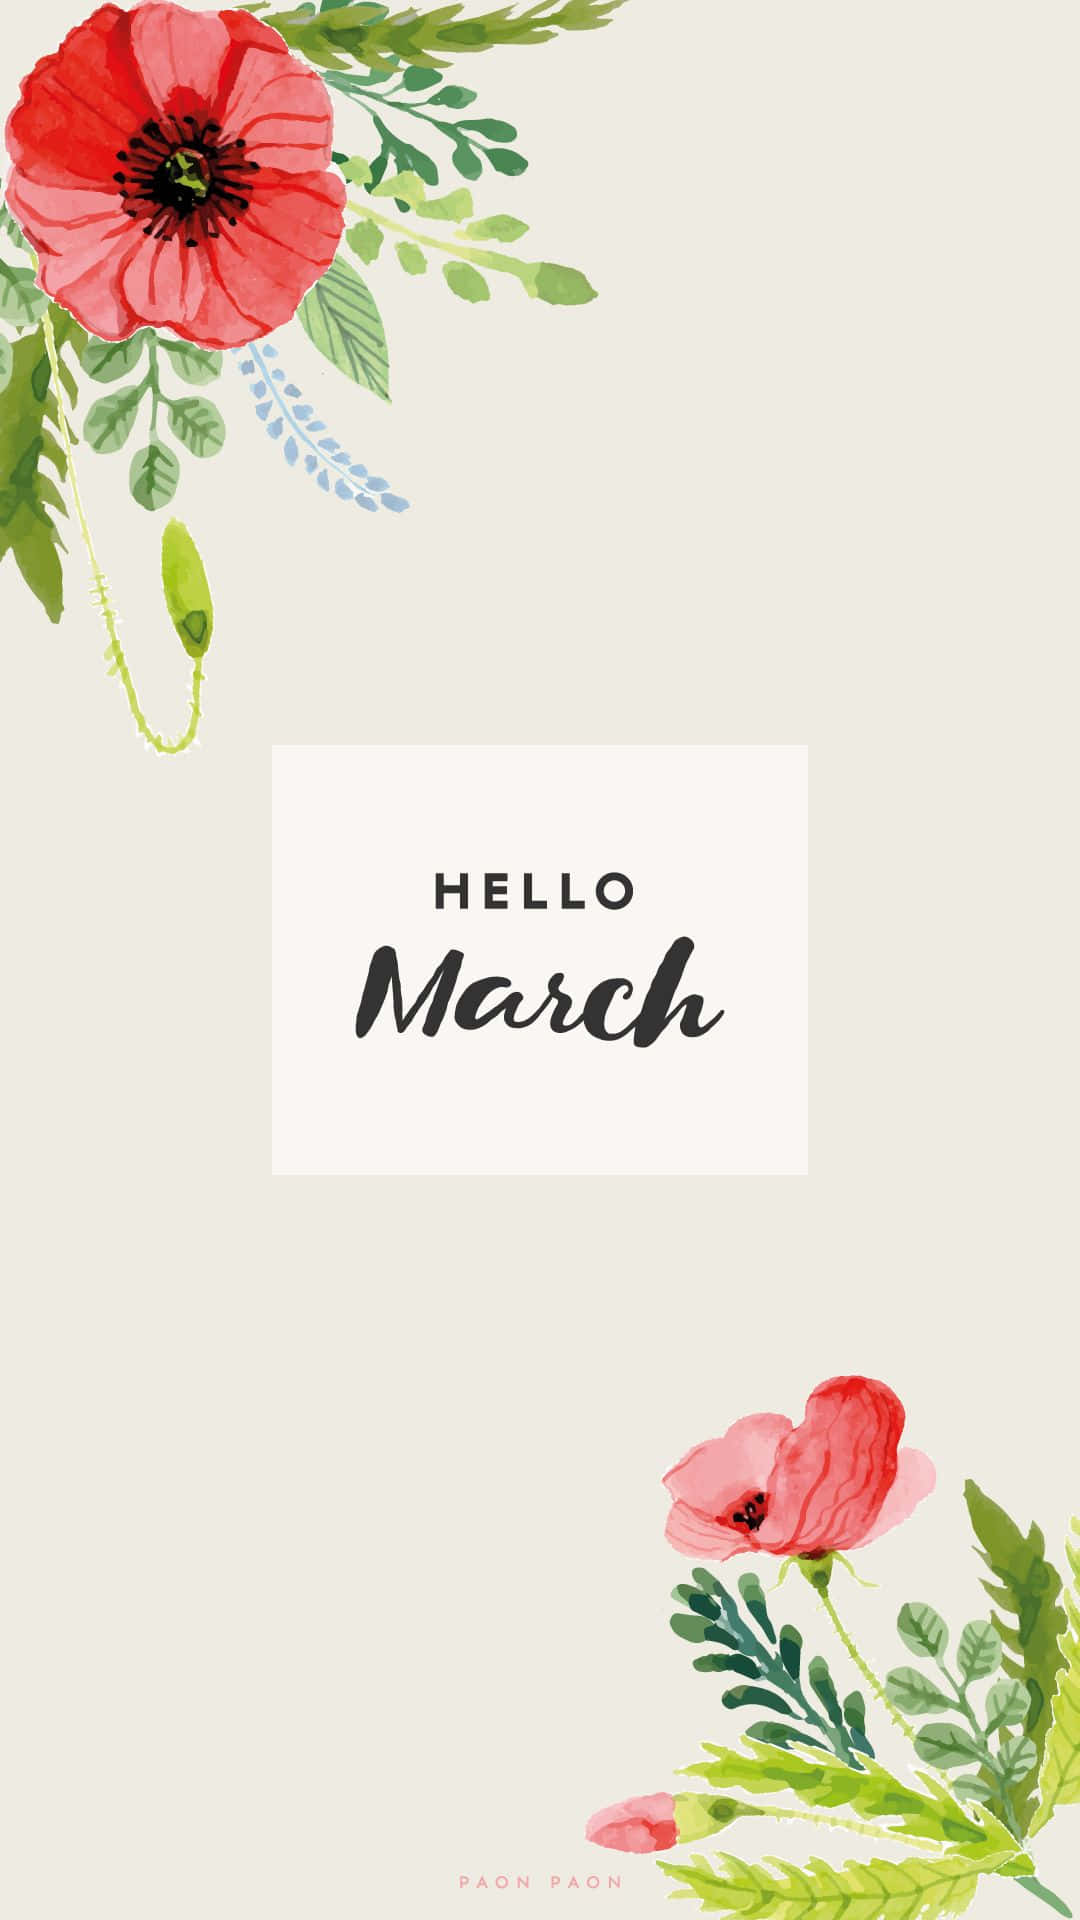 Fejr de nye begyndelser af forår med Sød marts! Wallpaper